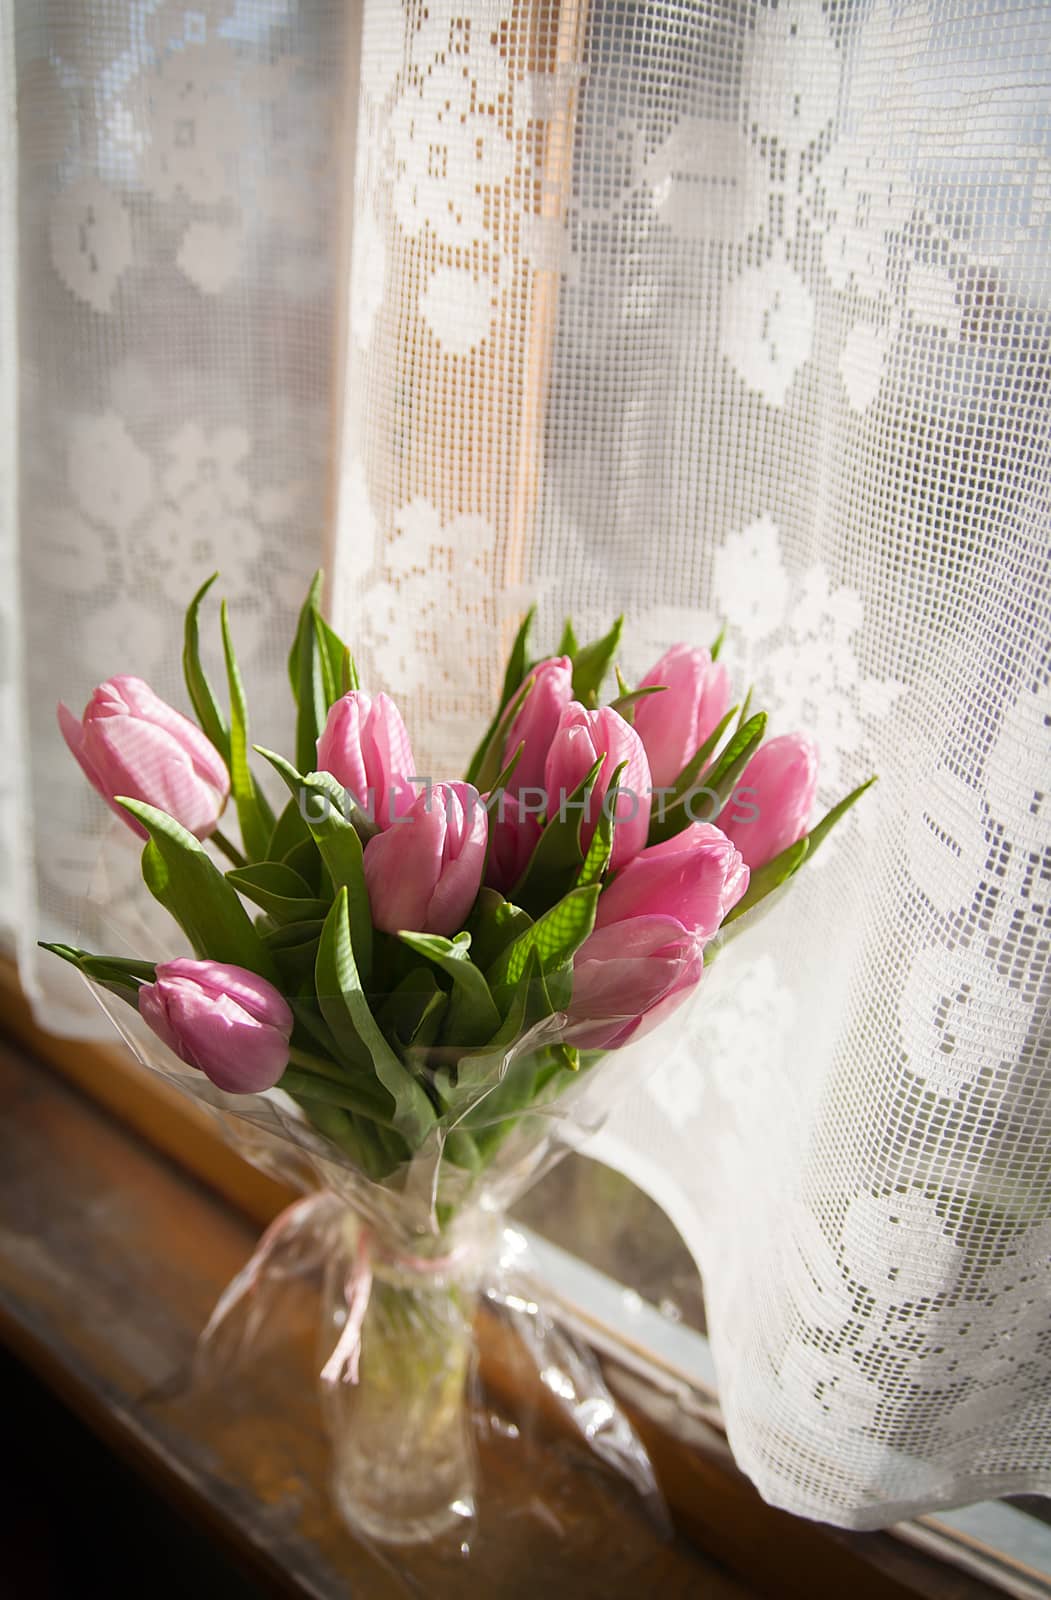 Beautiful flowers in vase near window by sfinks